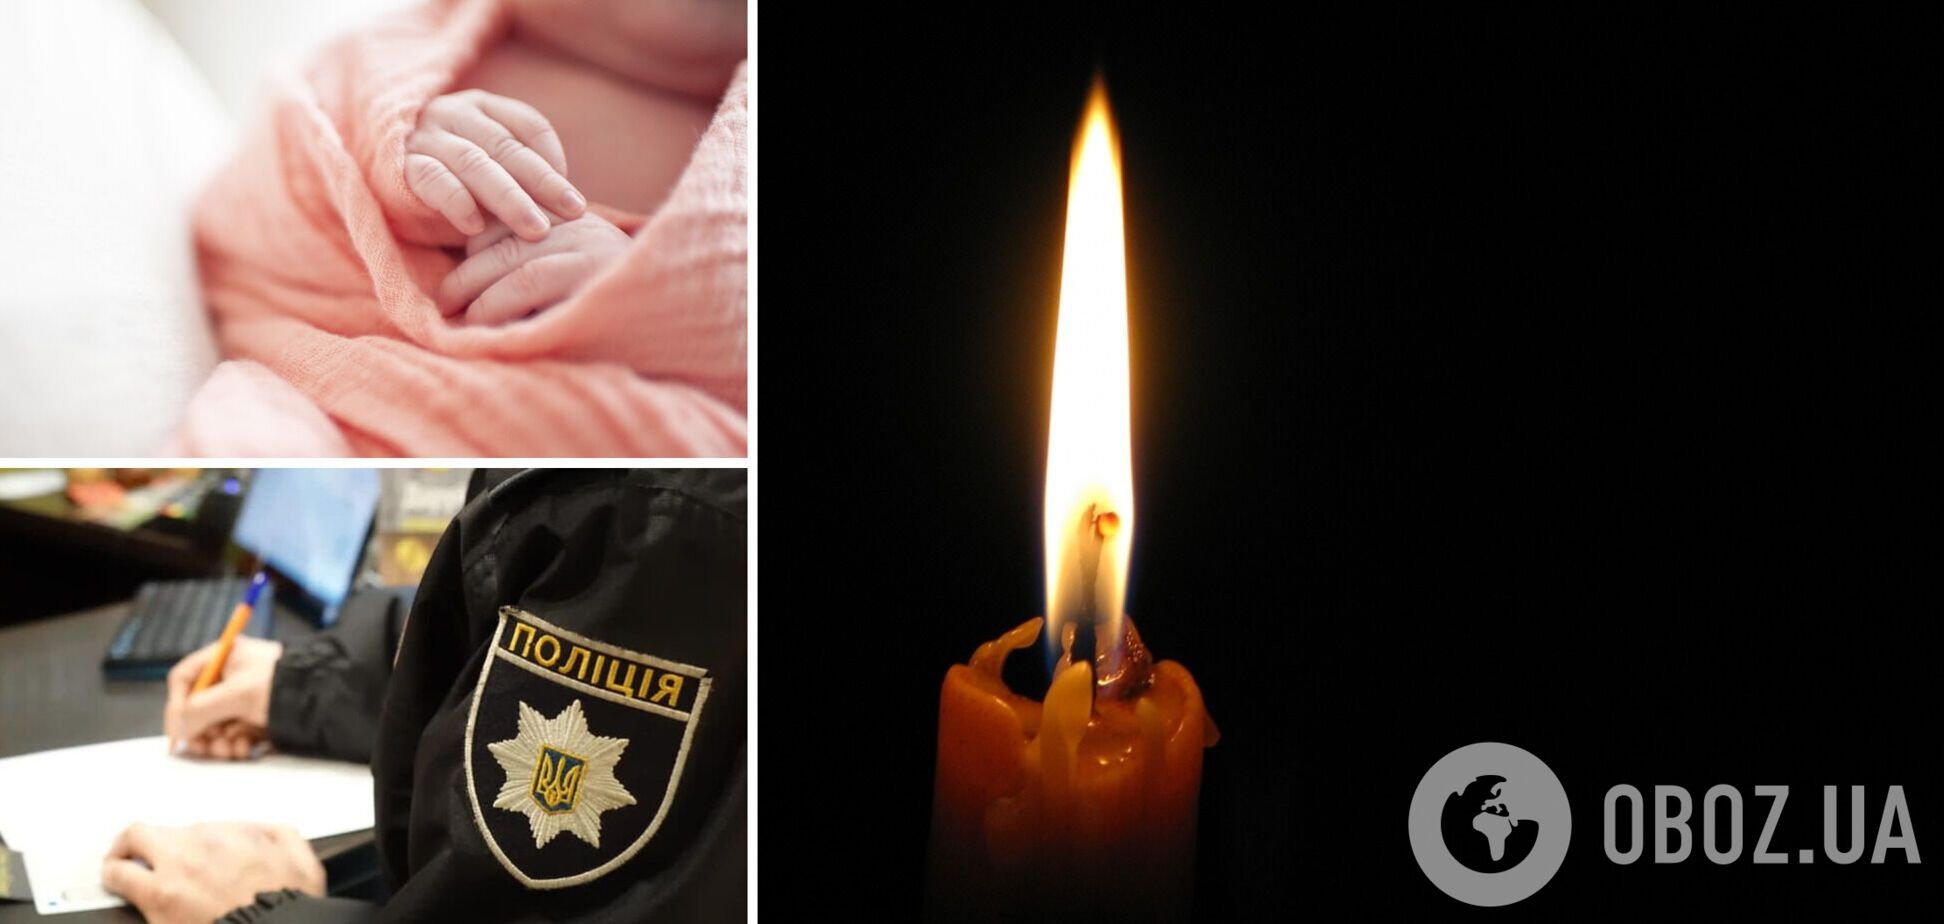 У Кам'янці померла 5-місячна дівчинка. Дитина плакала і кашляла, а потім перестала дихати